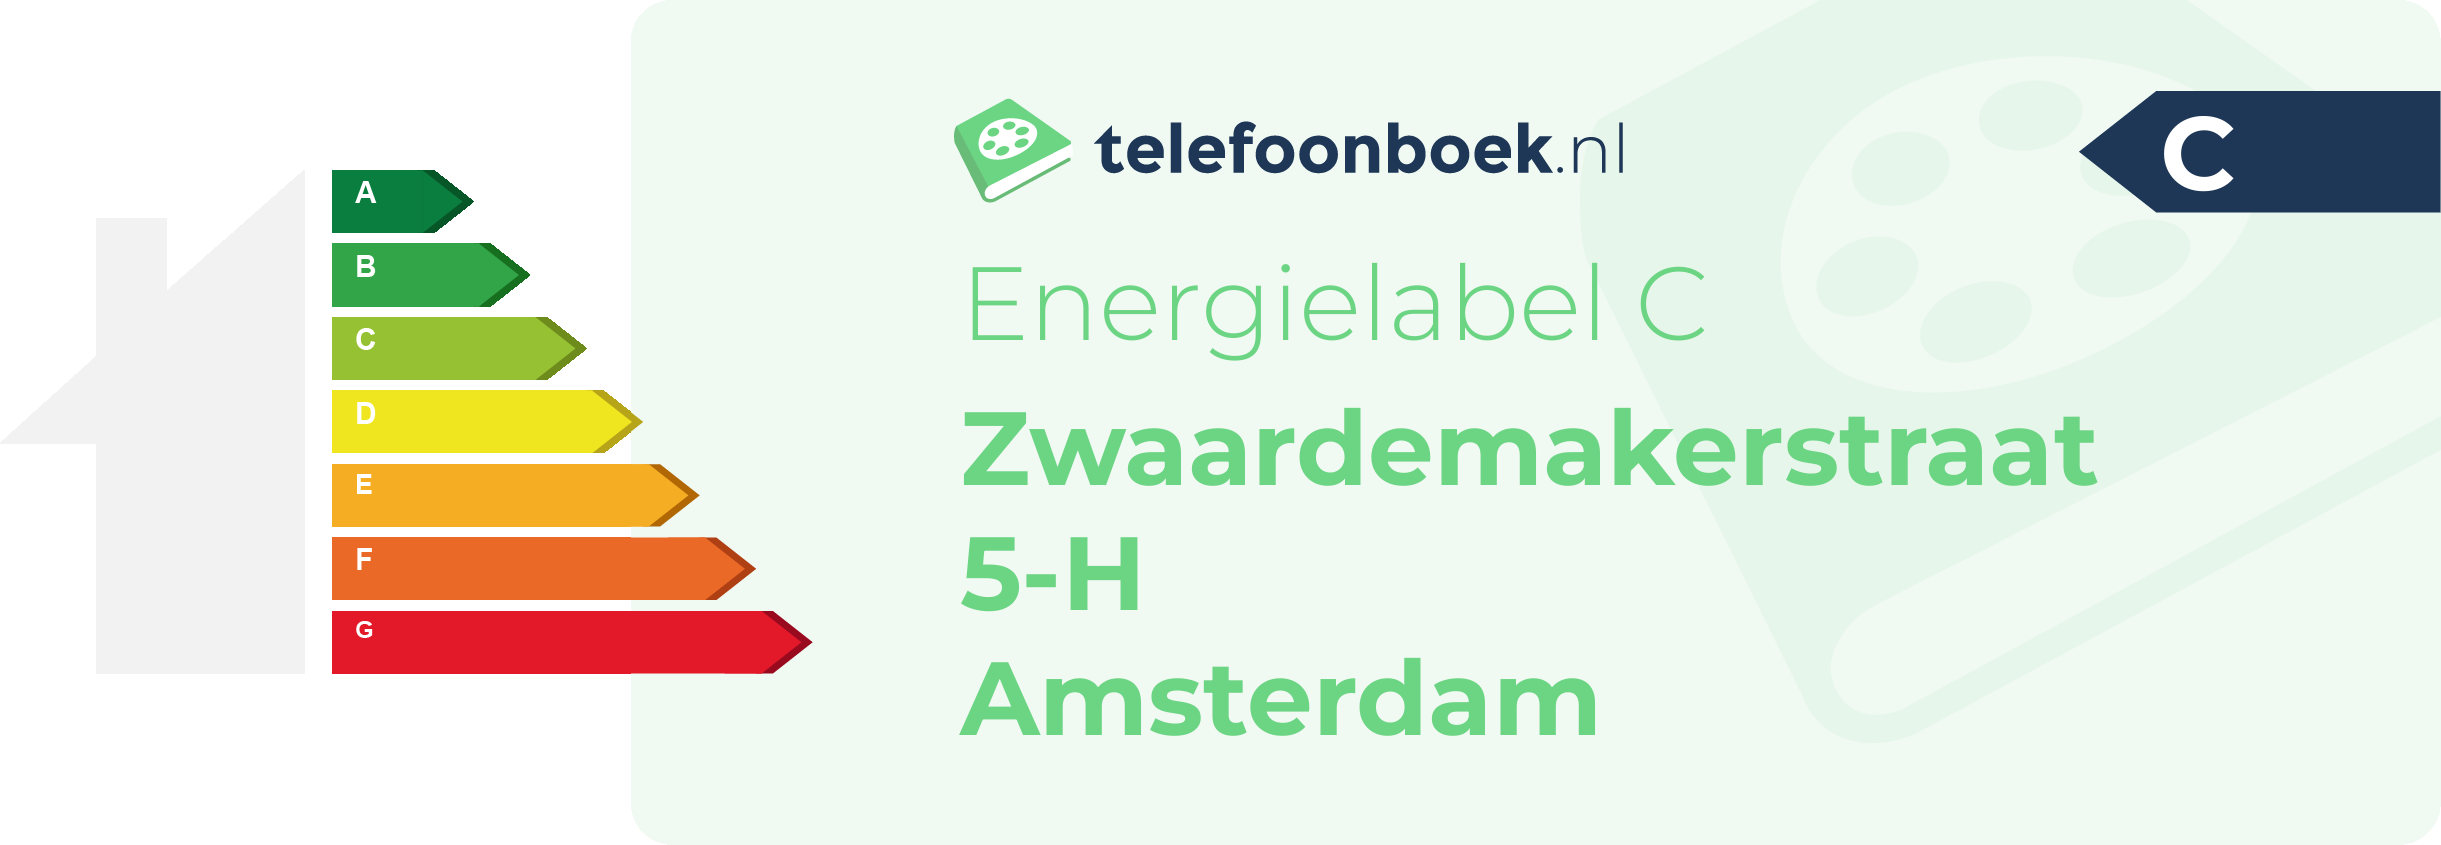 Energielabel Zwaardemakerstraat 5-H Amsterdam